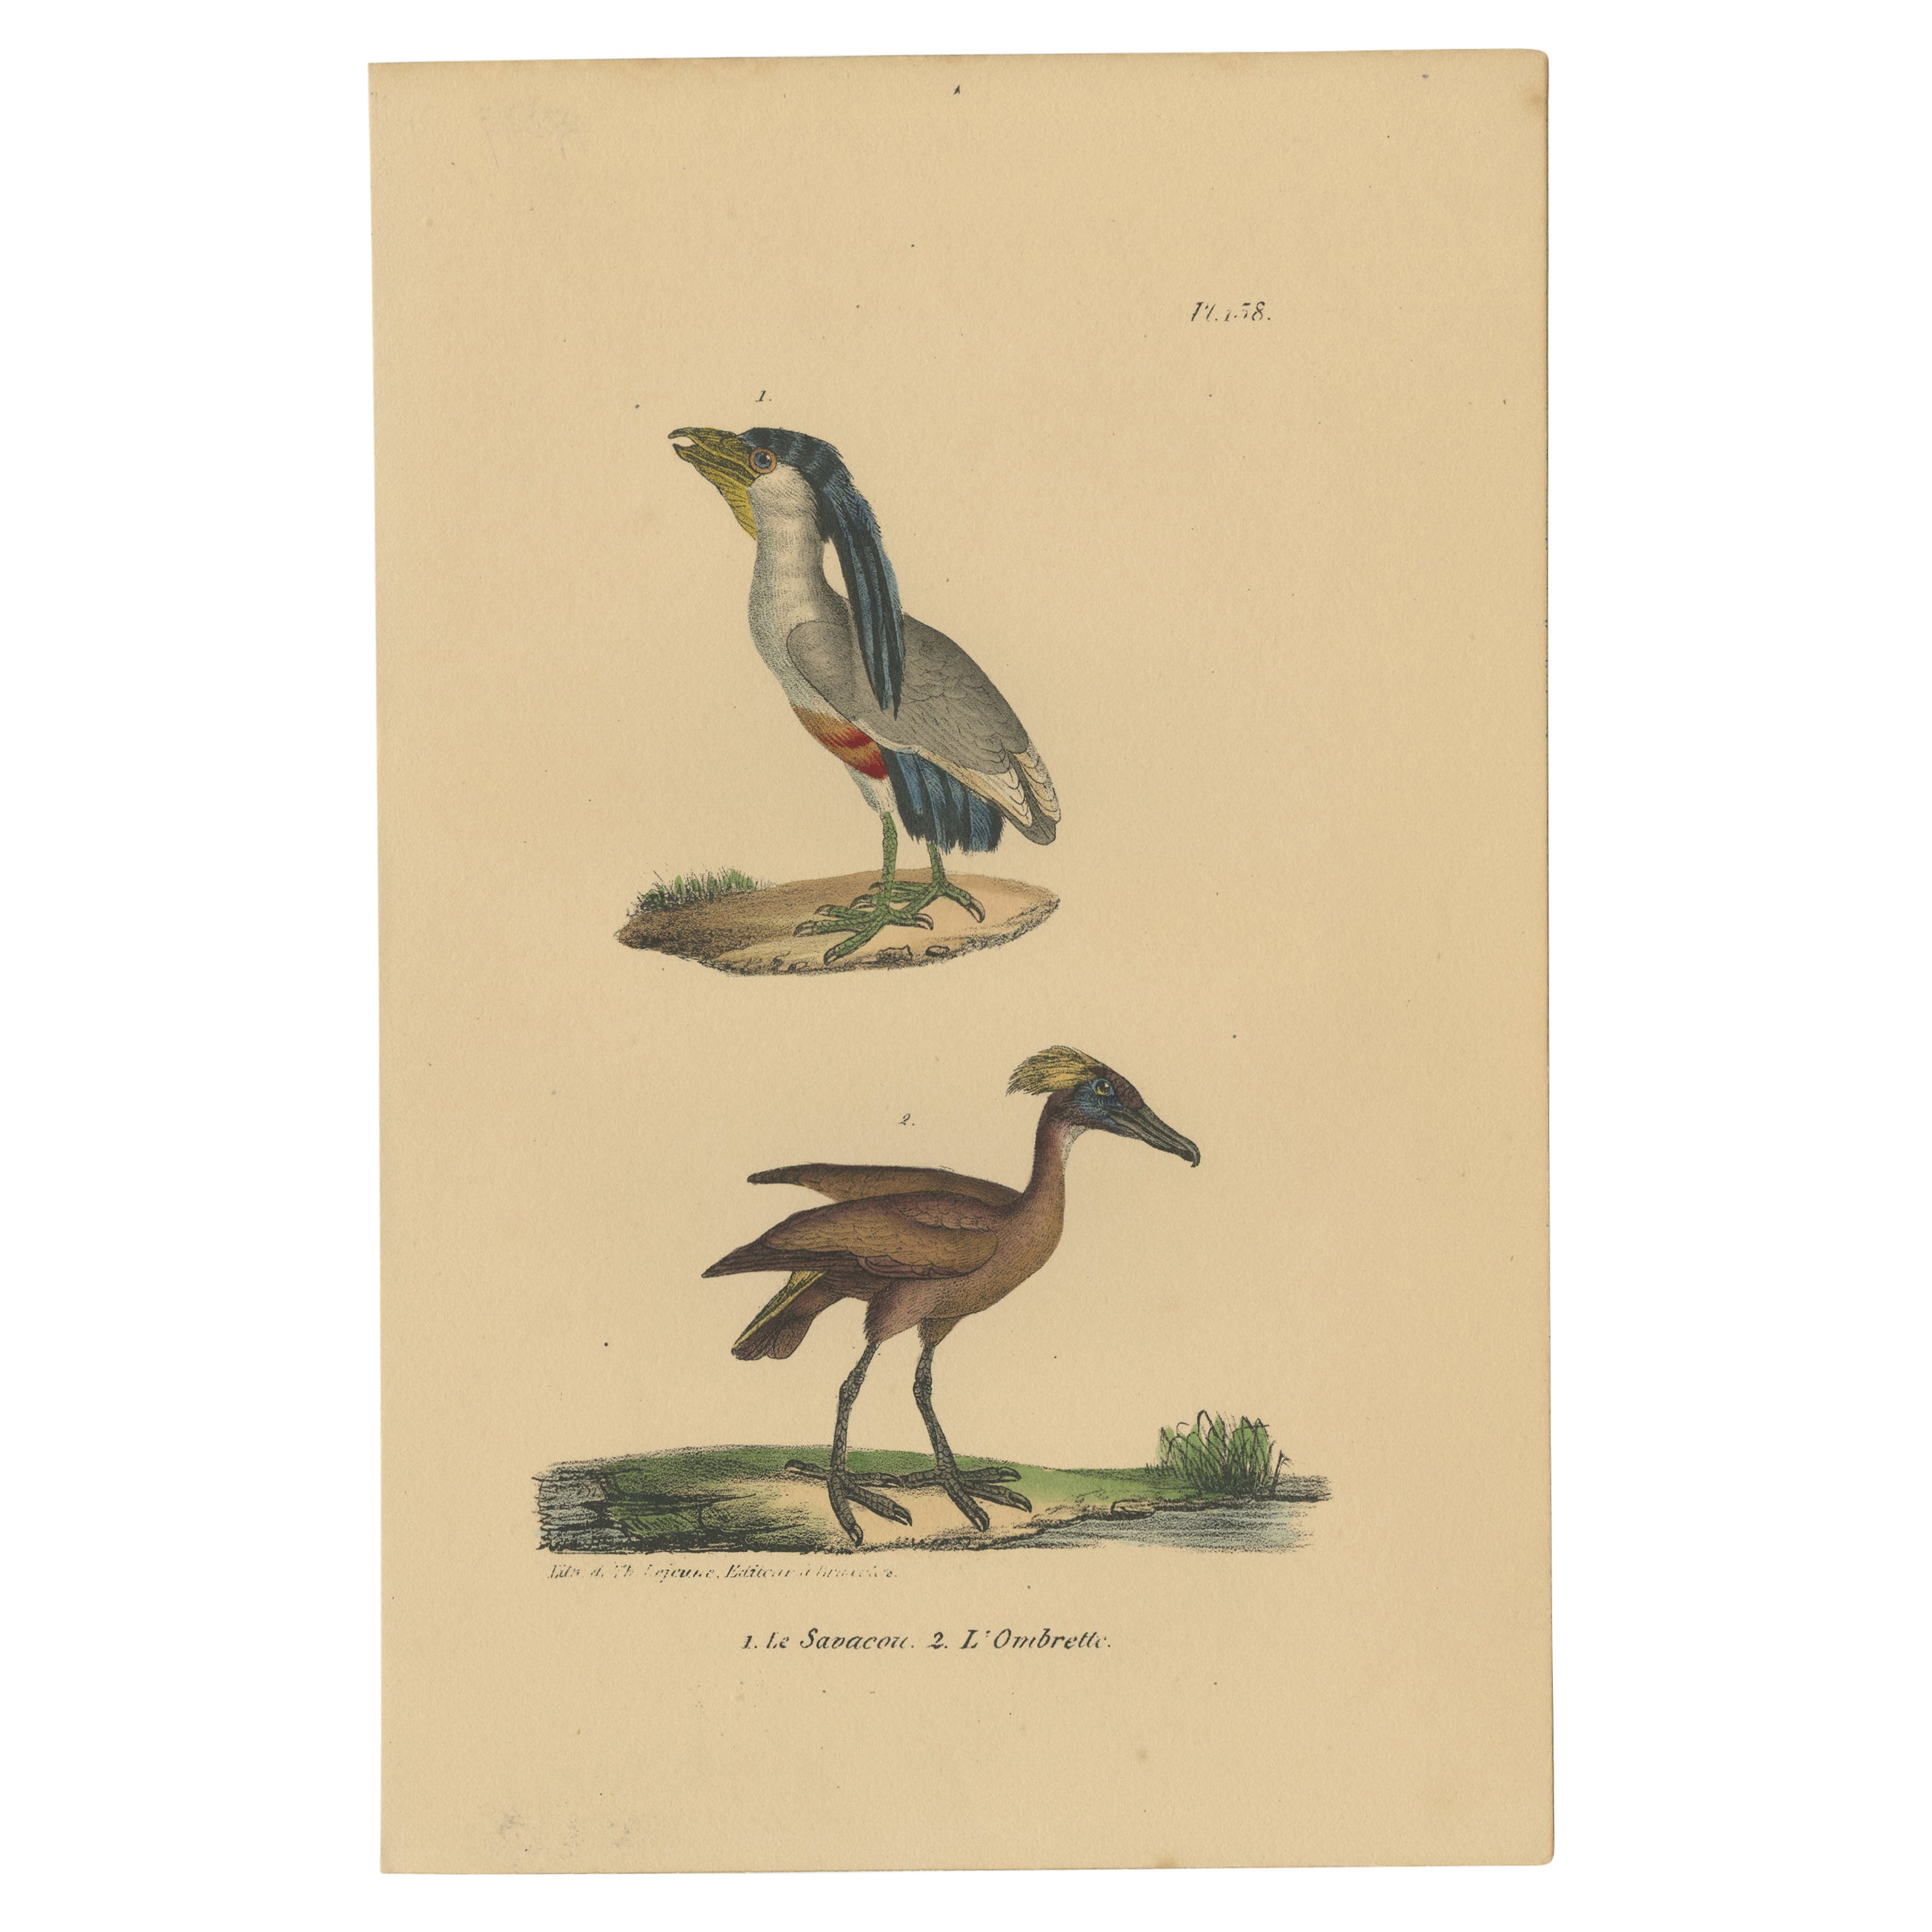 Pl. 158 Antique Bird Print of a Boat-billed Heron & Hamerkop by Lejeune 'c.1830' For Sale